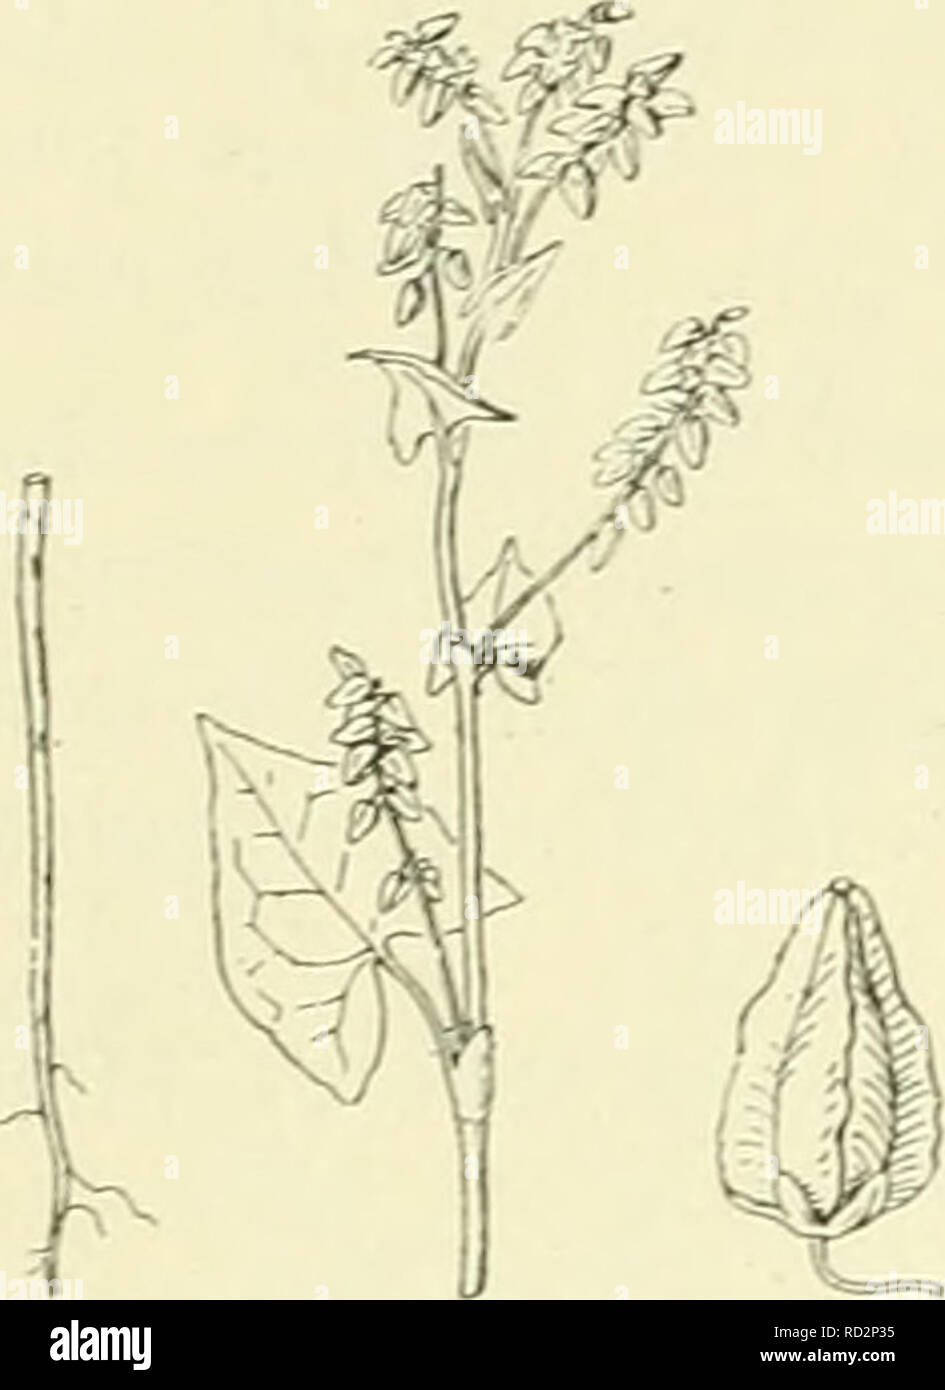 . De flora van Nederland. Plants. 88 — CHENOPODIACEAE. Familie 30. F.tataricum 'jGaertn. (Polygonum tataricum L.) Fransehe boekweit. (Fig. 91). Deze soort gelijkt op de vorige, doch is door de groenachtige bloemen minder opvallend. De stengel is rechtopstaand, wat heen en weer gebogen, rond , meest groen. De bladen zijn meest meer breed dan lang, doch overigens gelijk aan die bij de gewone boekweit. De tuitjes zijn langer, doch toch nog kort en ongewimperd. De bloemen staan in kleine, gesteelde aren in de bladoksels, bovendien is er een eindelingsche, afgebroken aar zonder bladen en die vaak h Stock Photo